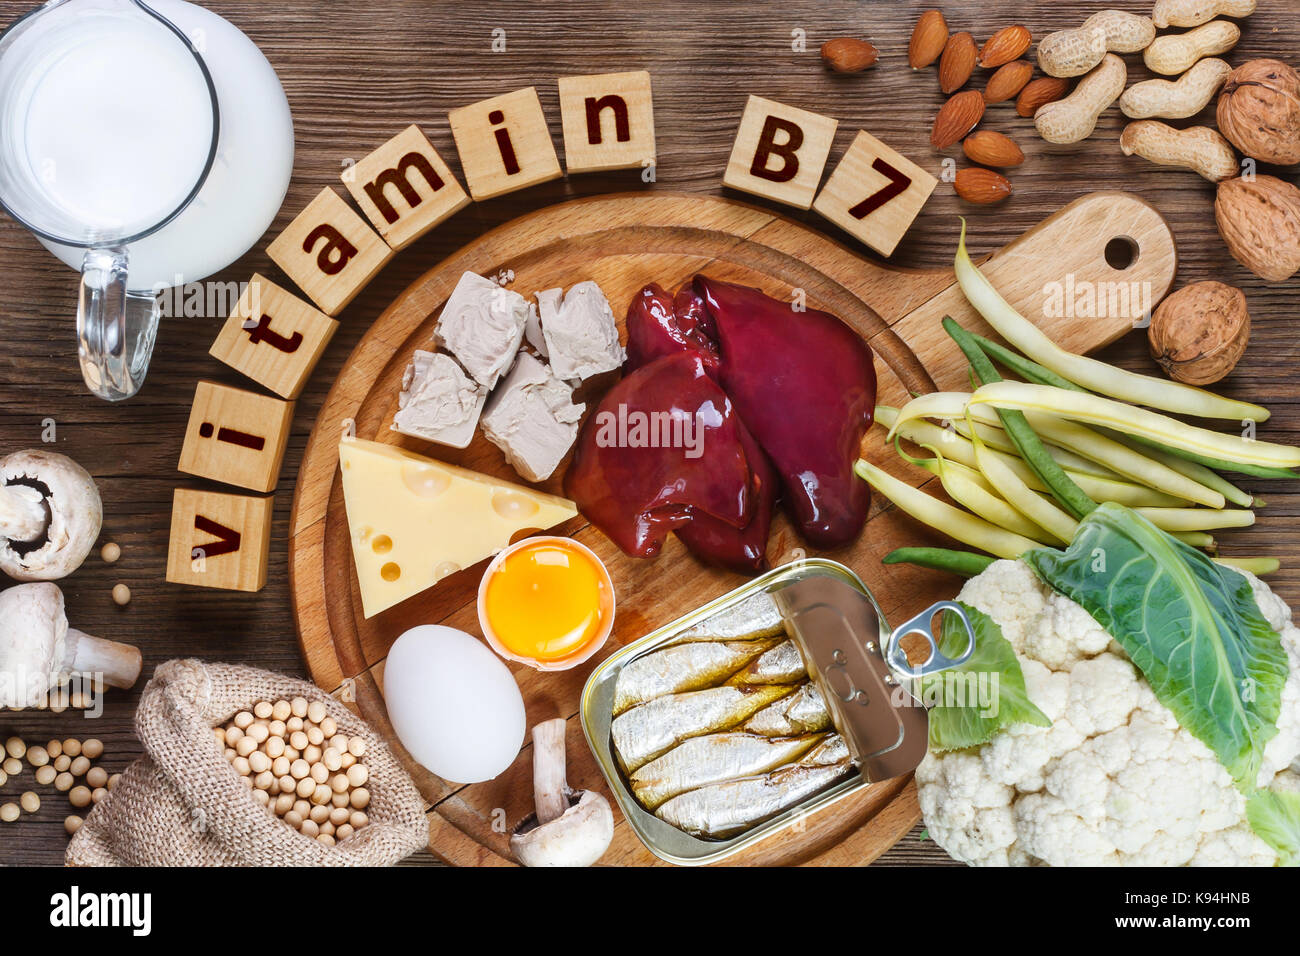 Vitamin b7 fotografías e imágenes de alta resolución - Alamy